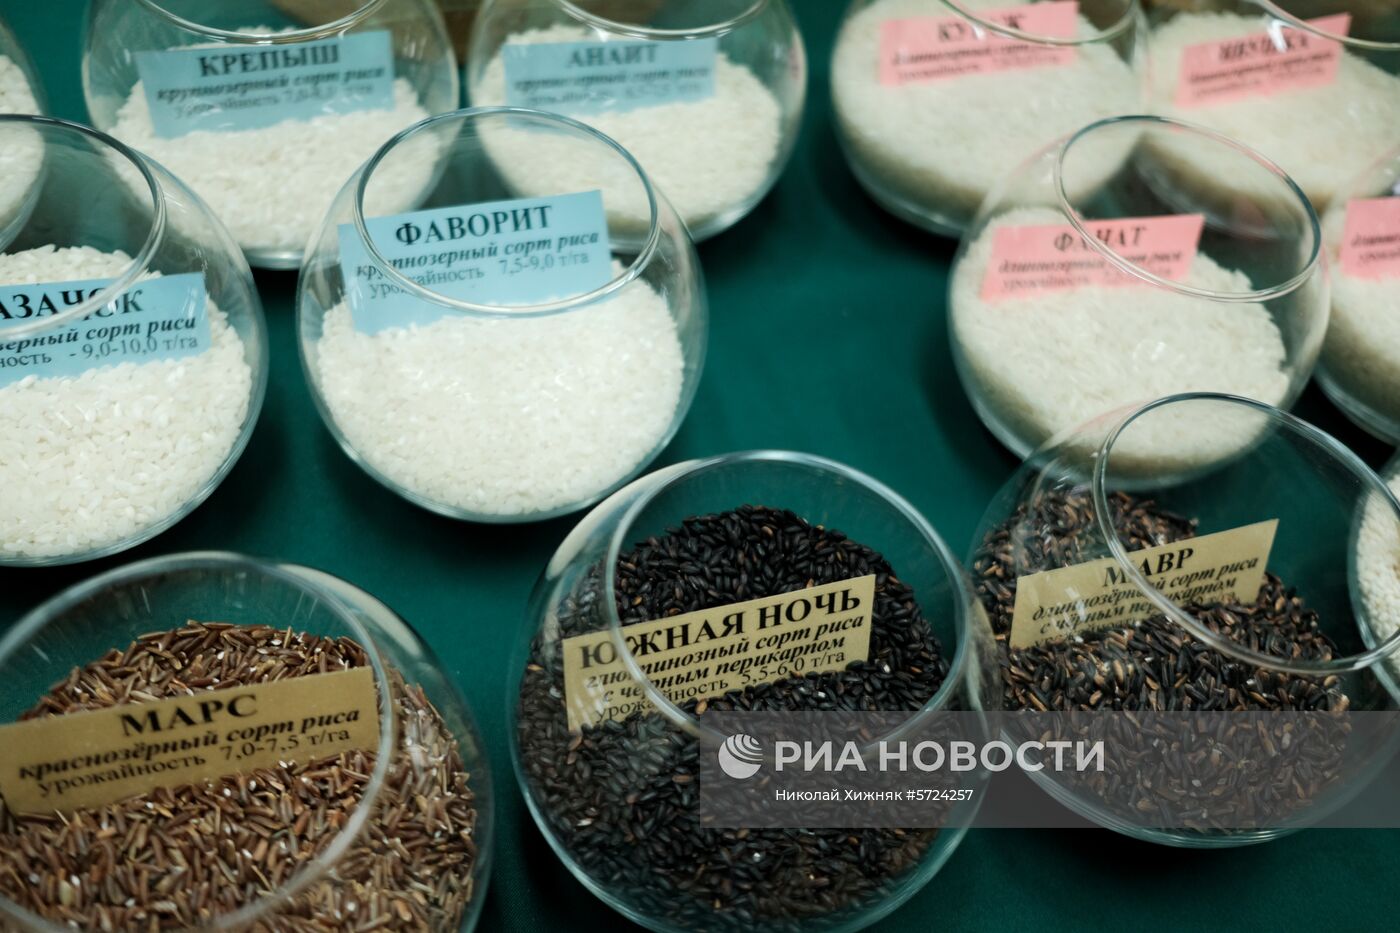 Всероссийский научно-исследовательский институт риса